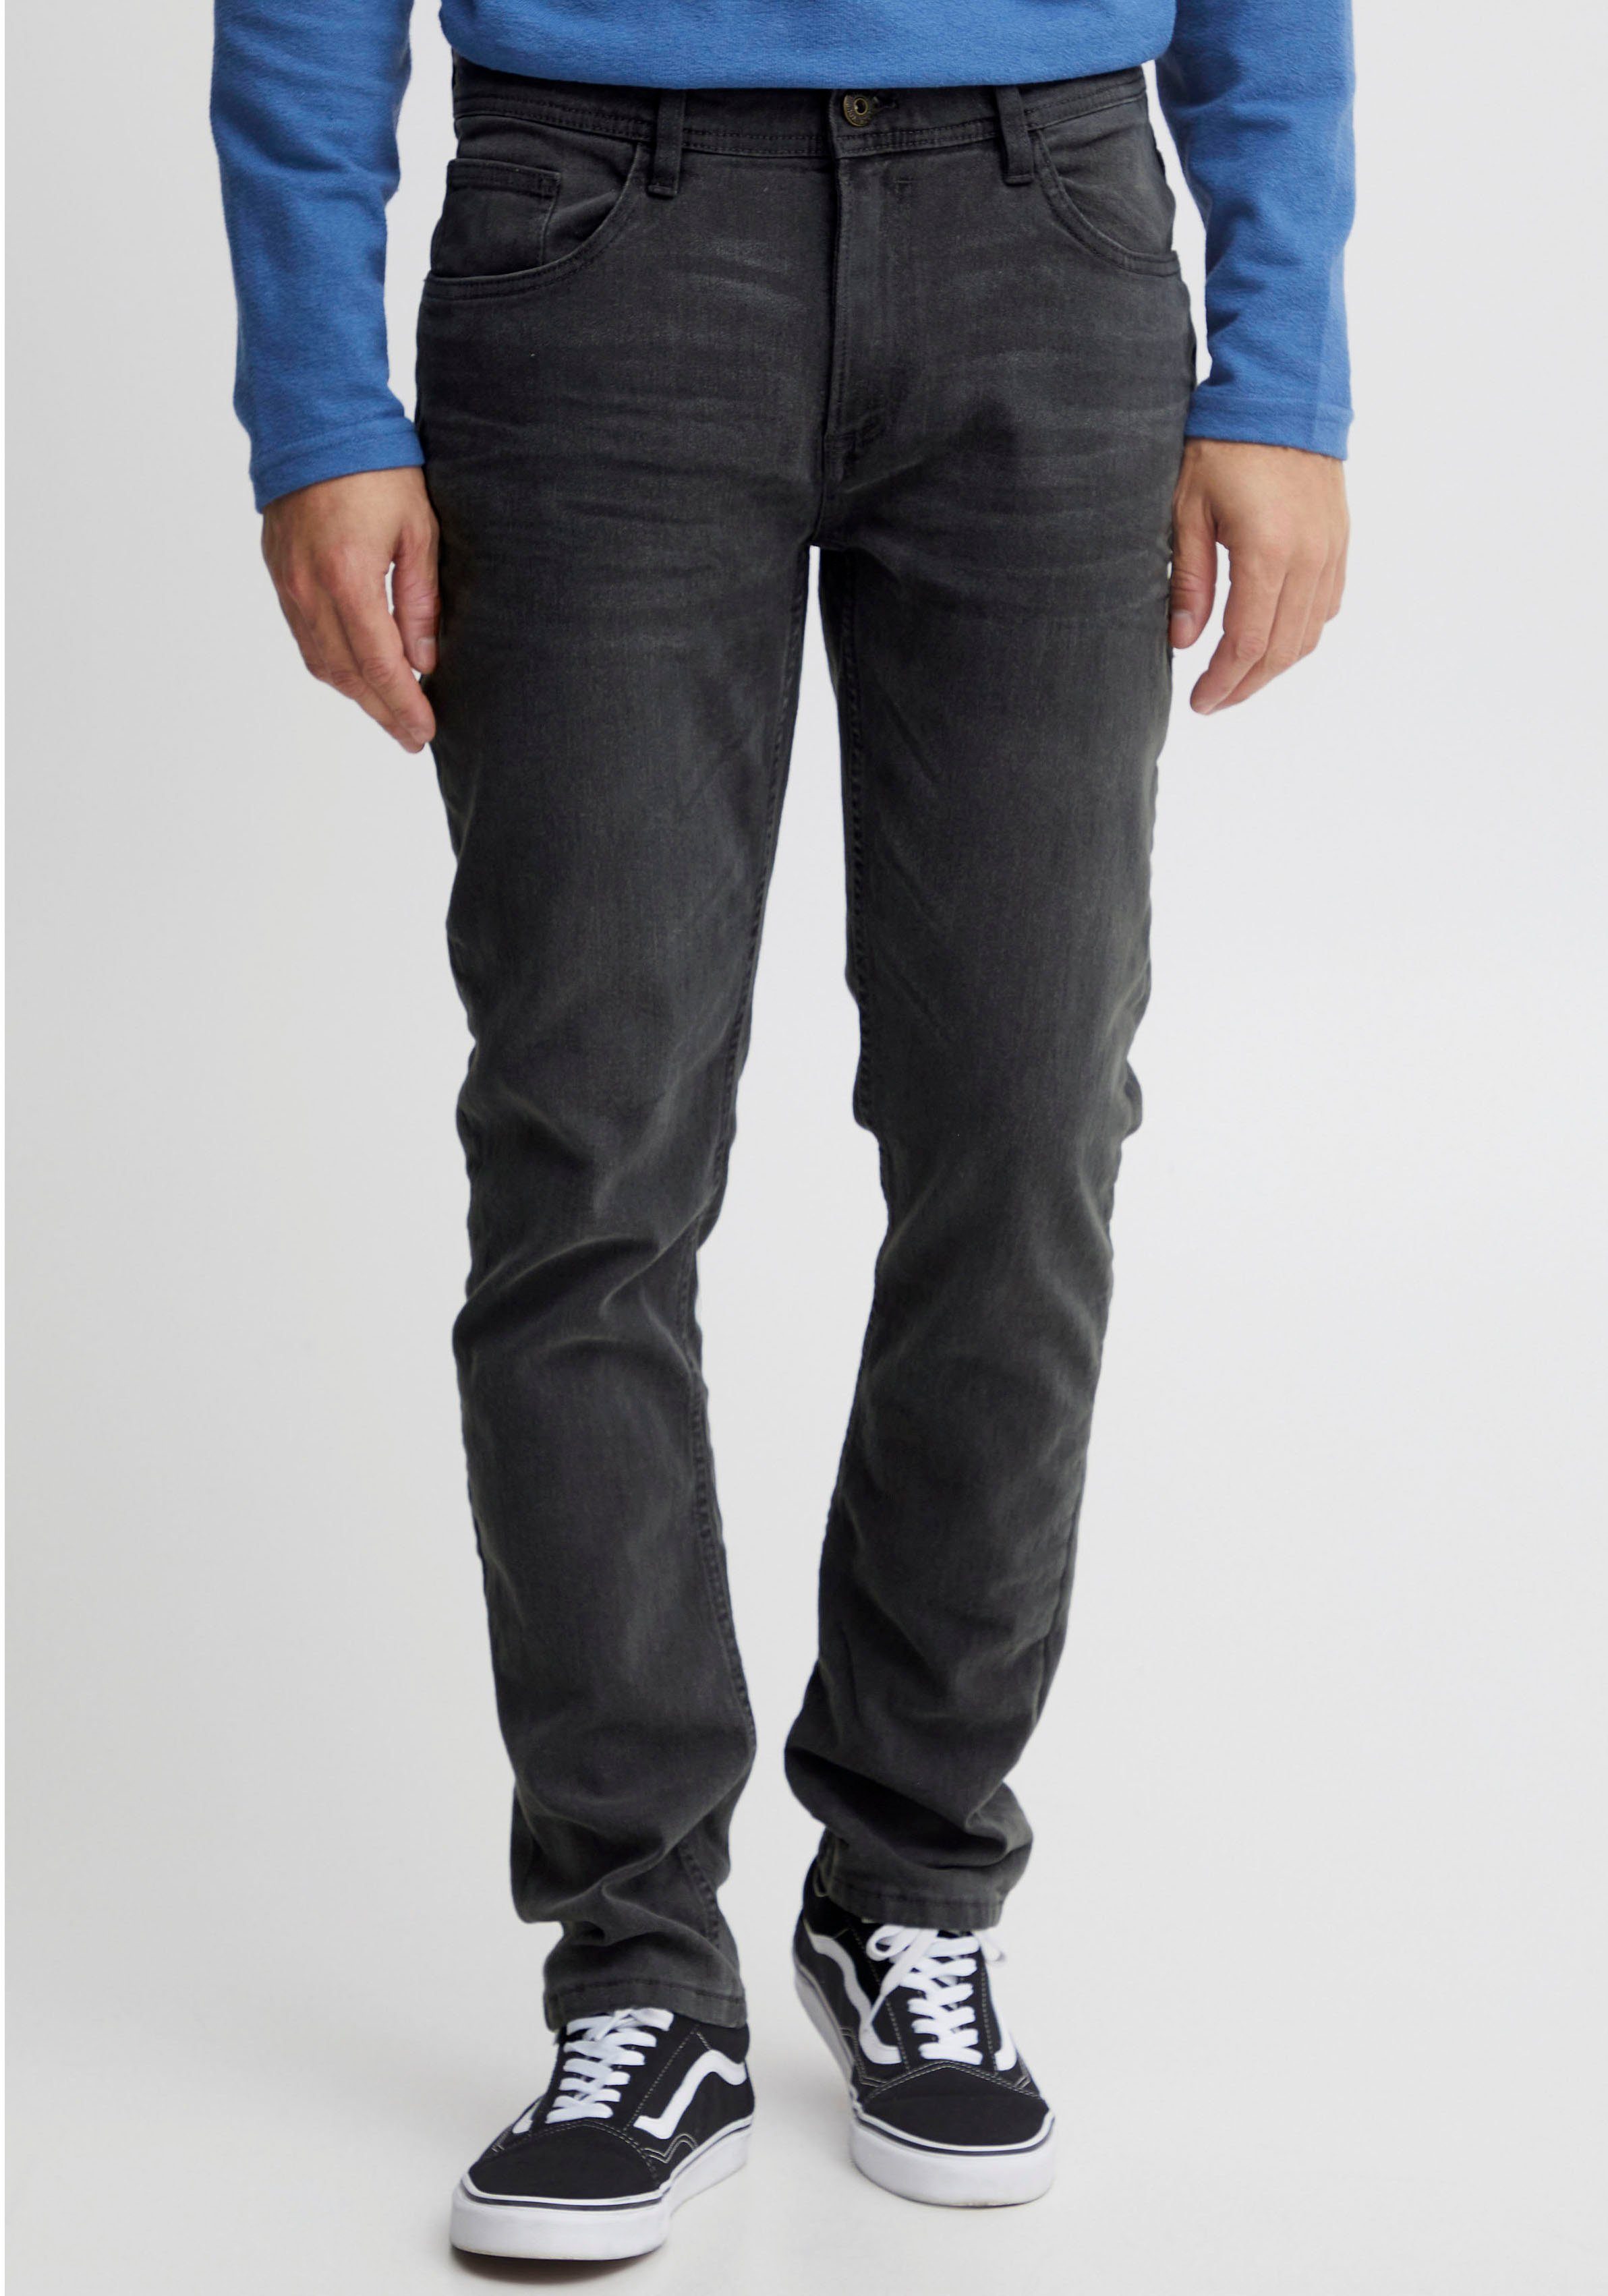 BL-Jeans grey fit Twister 5-Pocket-Jeans Blend